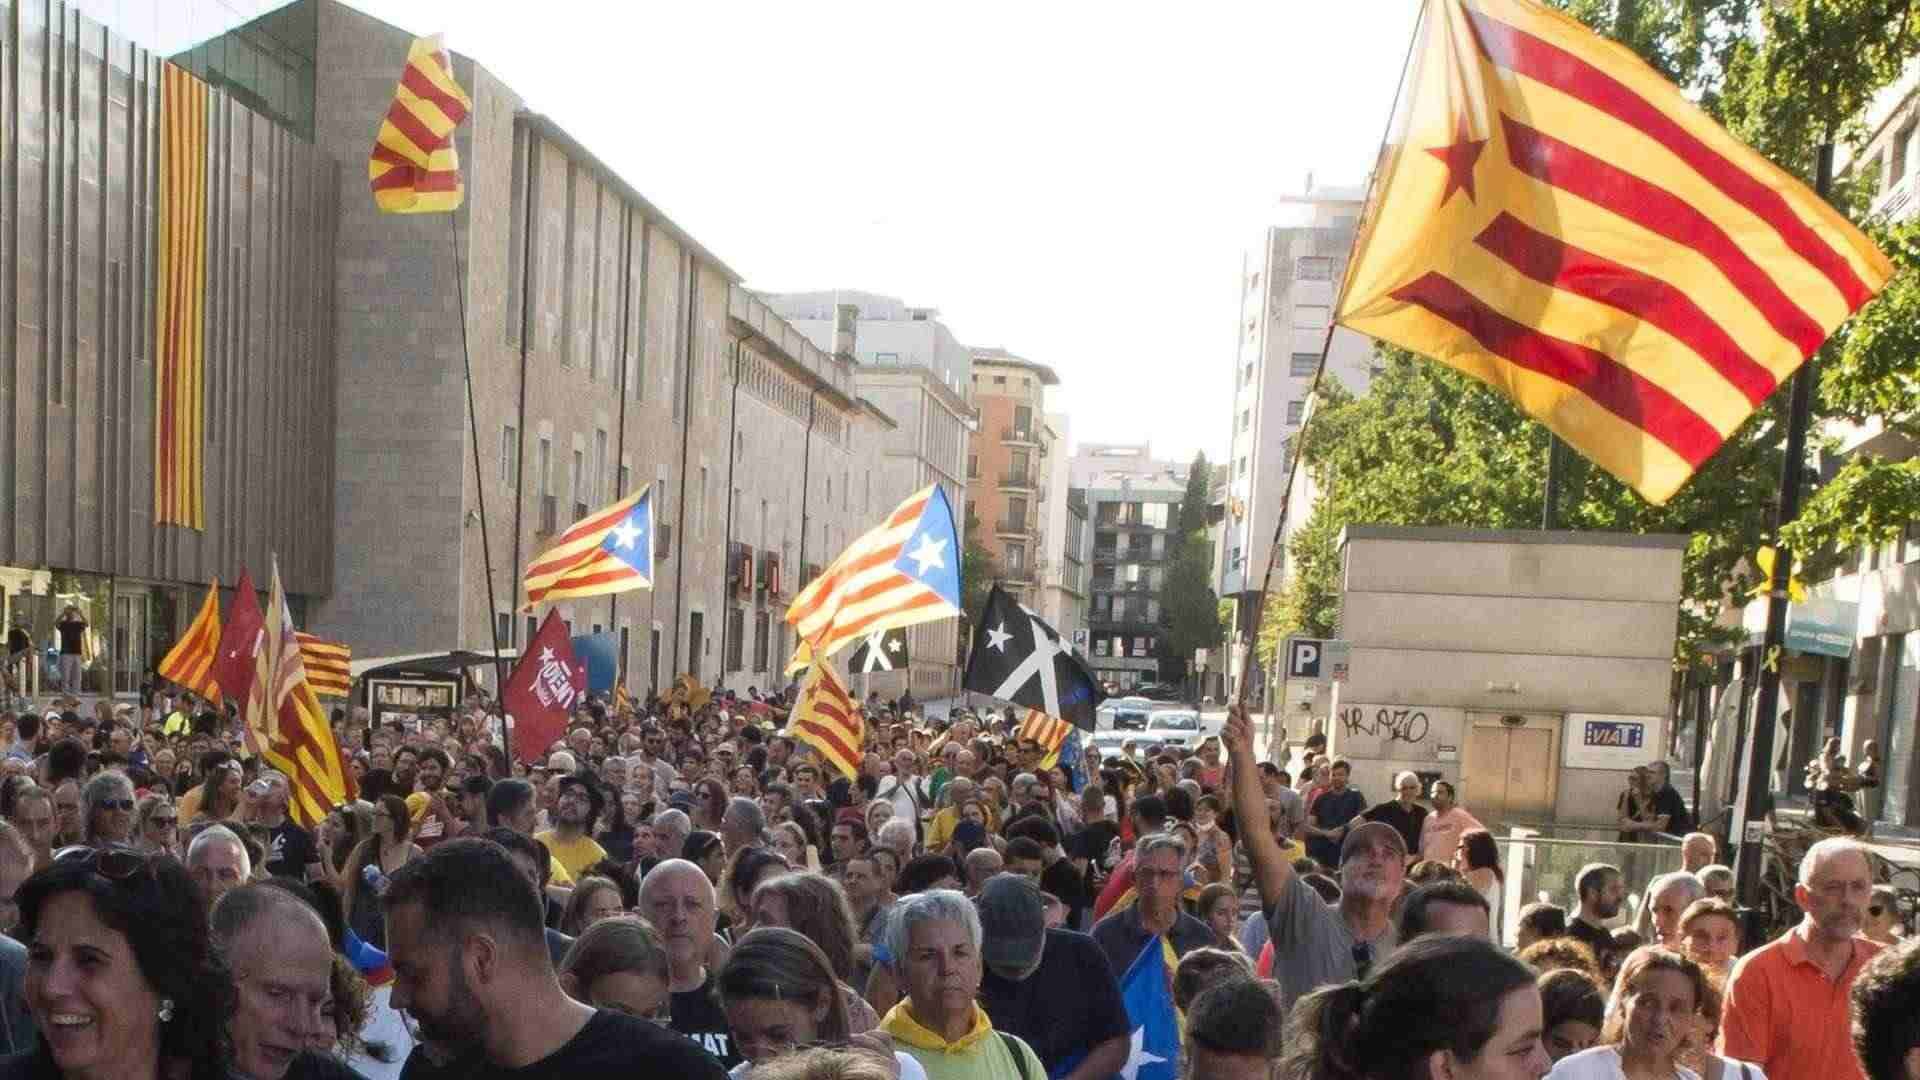 Portes obertes per la Diada 2023 de Catalunya: horaris i on obren avui